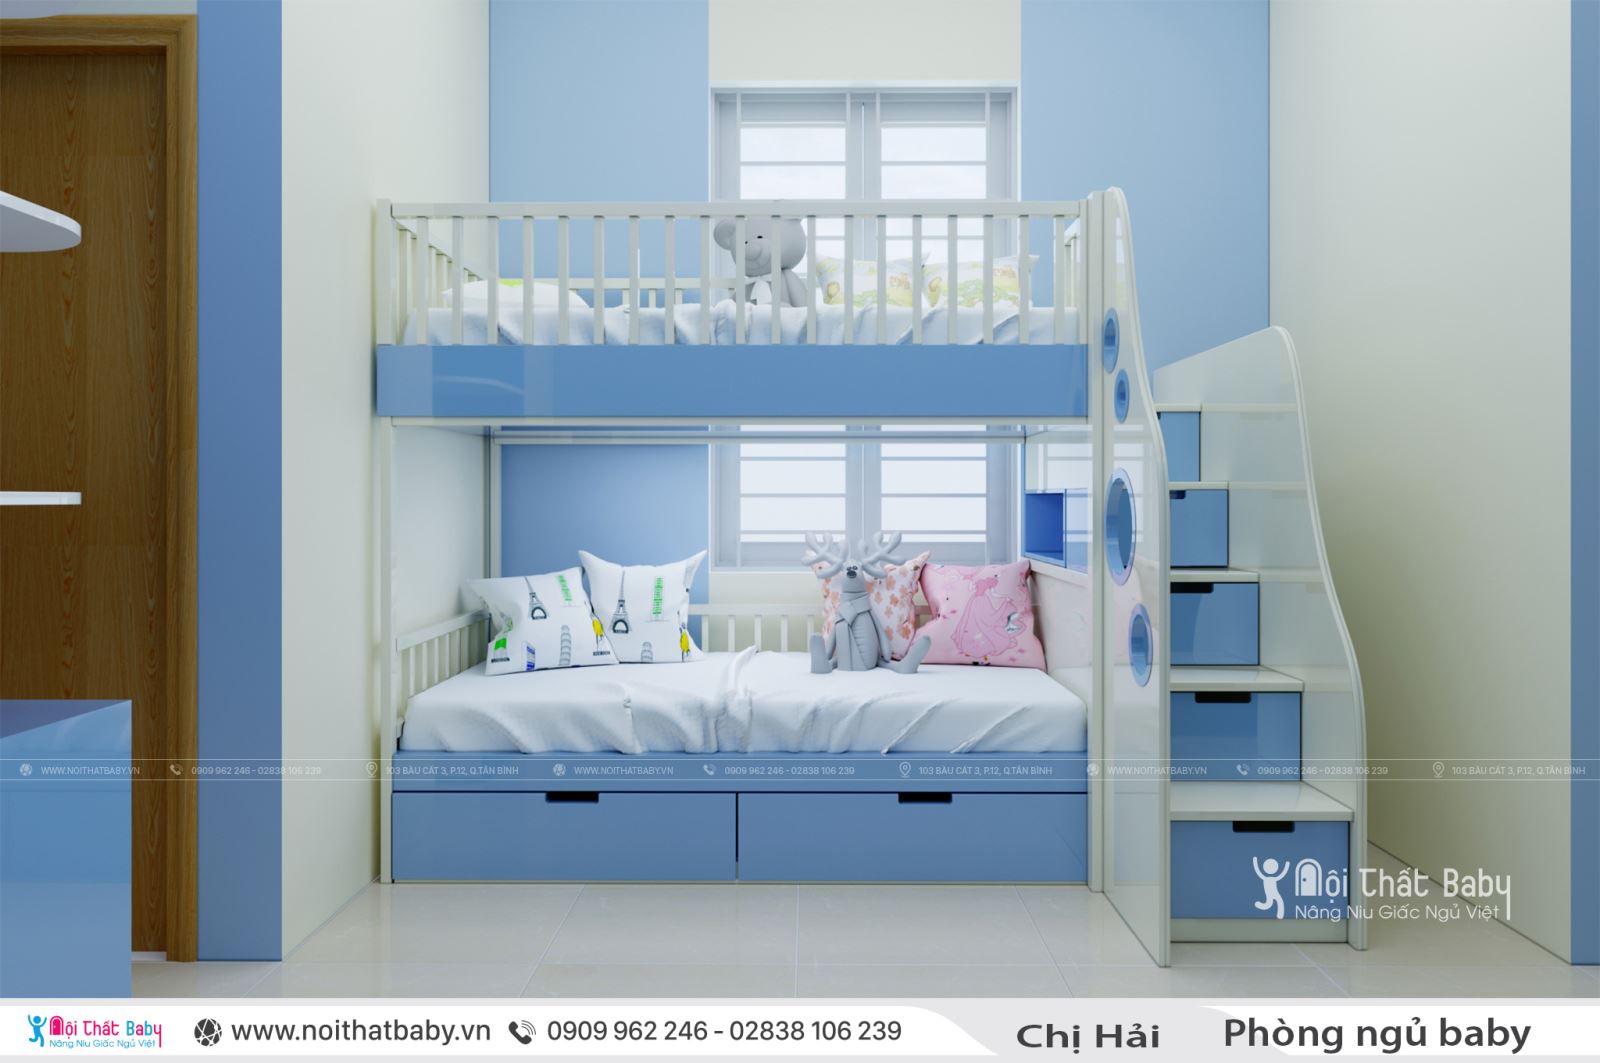 Những mẫu giường tầng mới và đẹp nhất cho ngôi nhà bạn